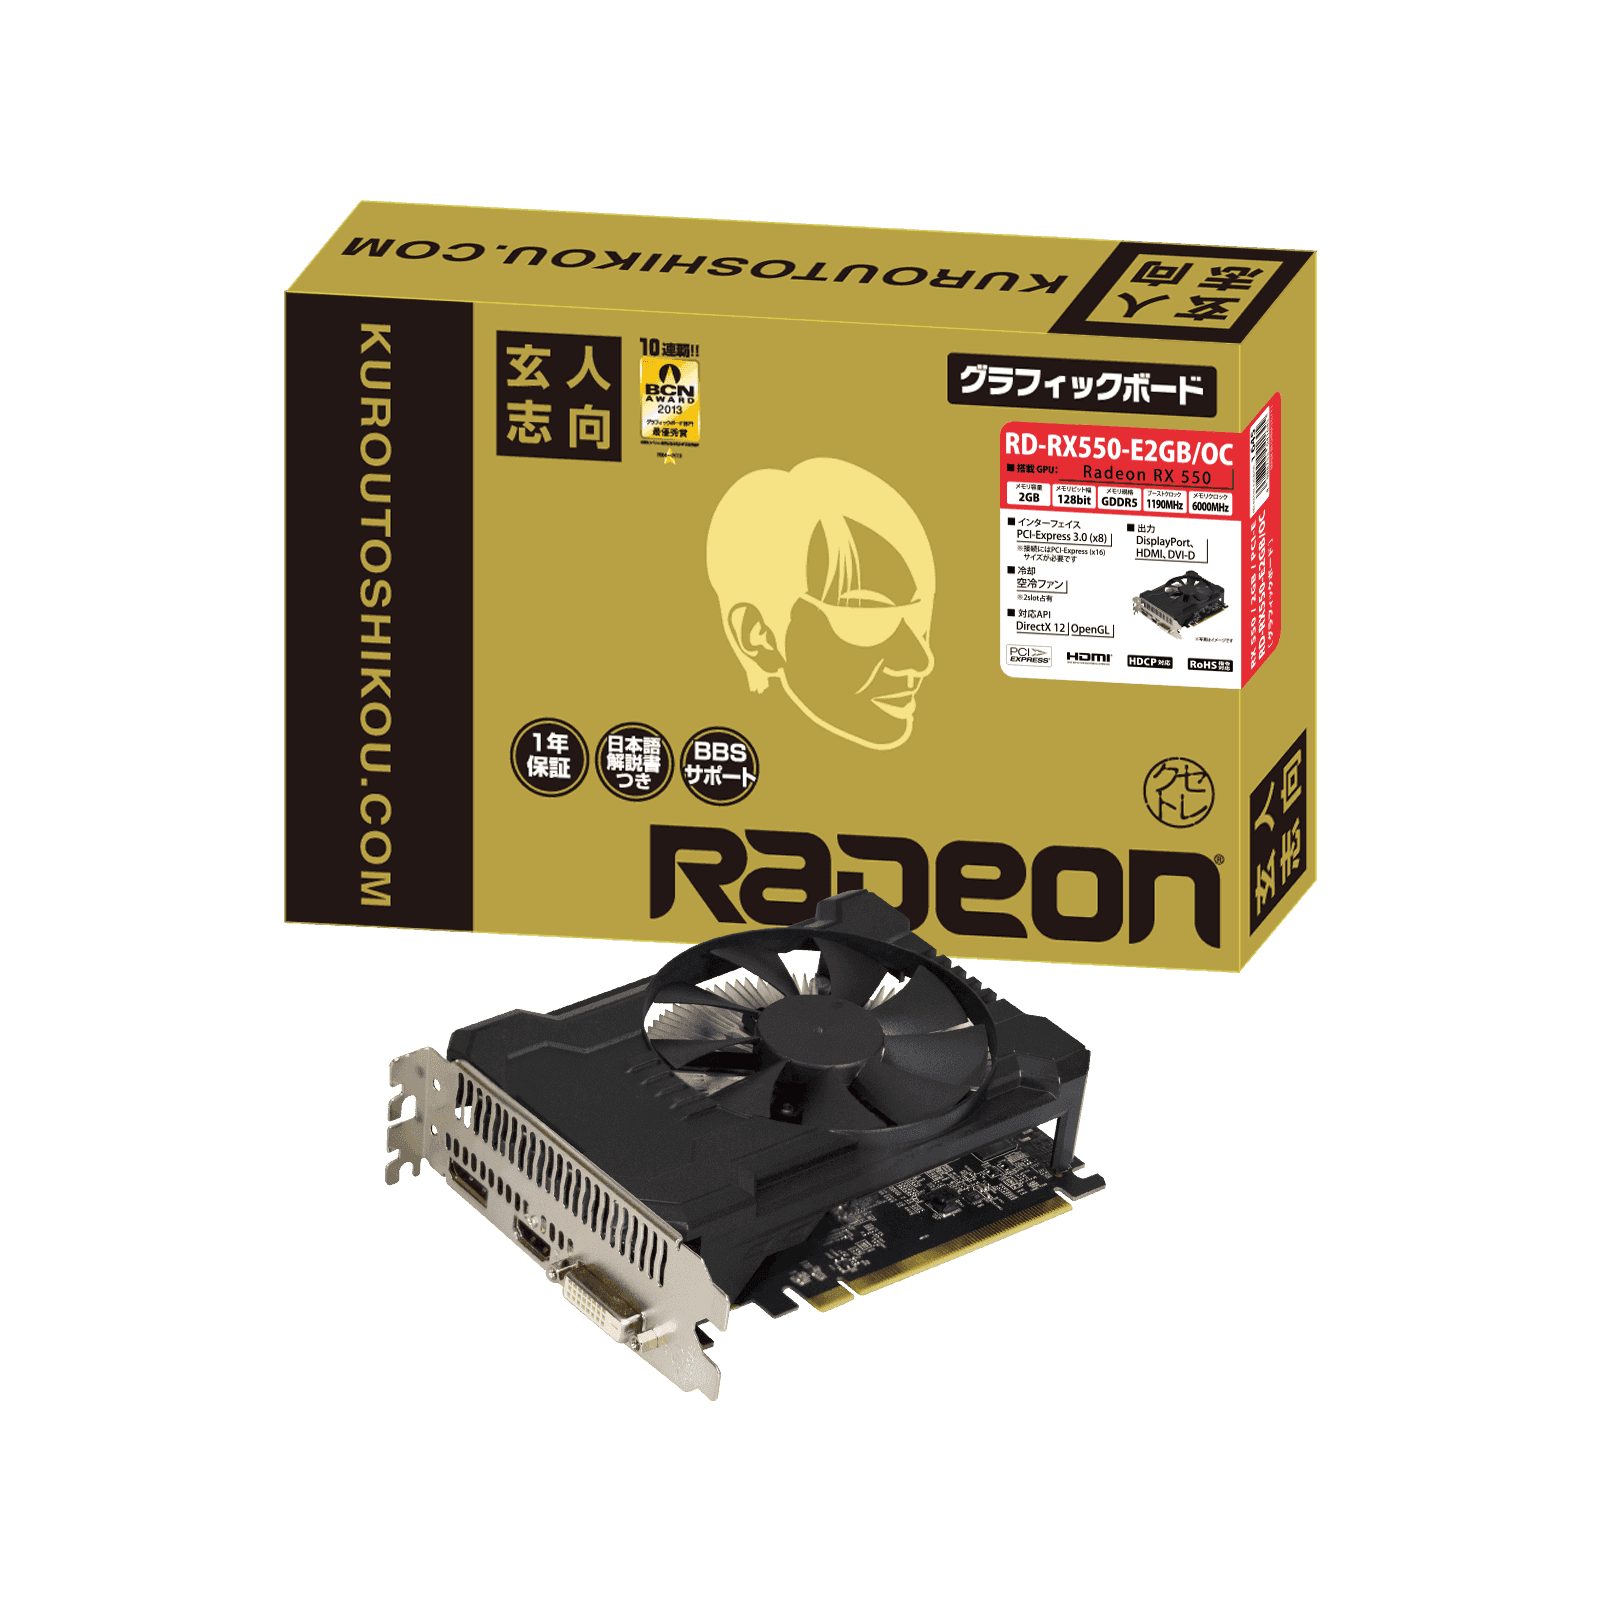 Radeon RX 550 玄人志向 RD-RX550-E2GB/OC グラフィ